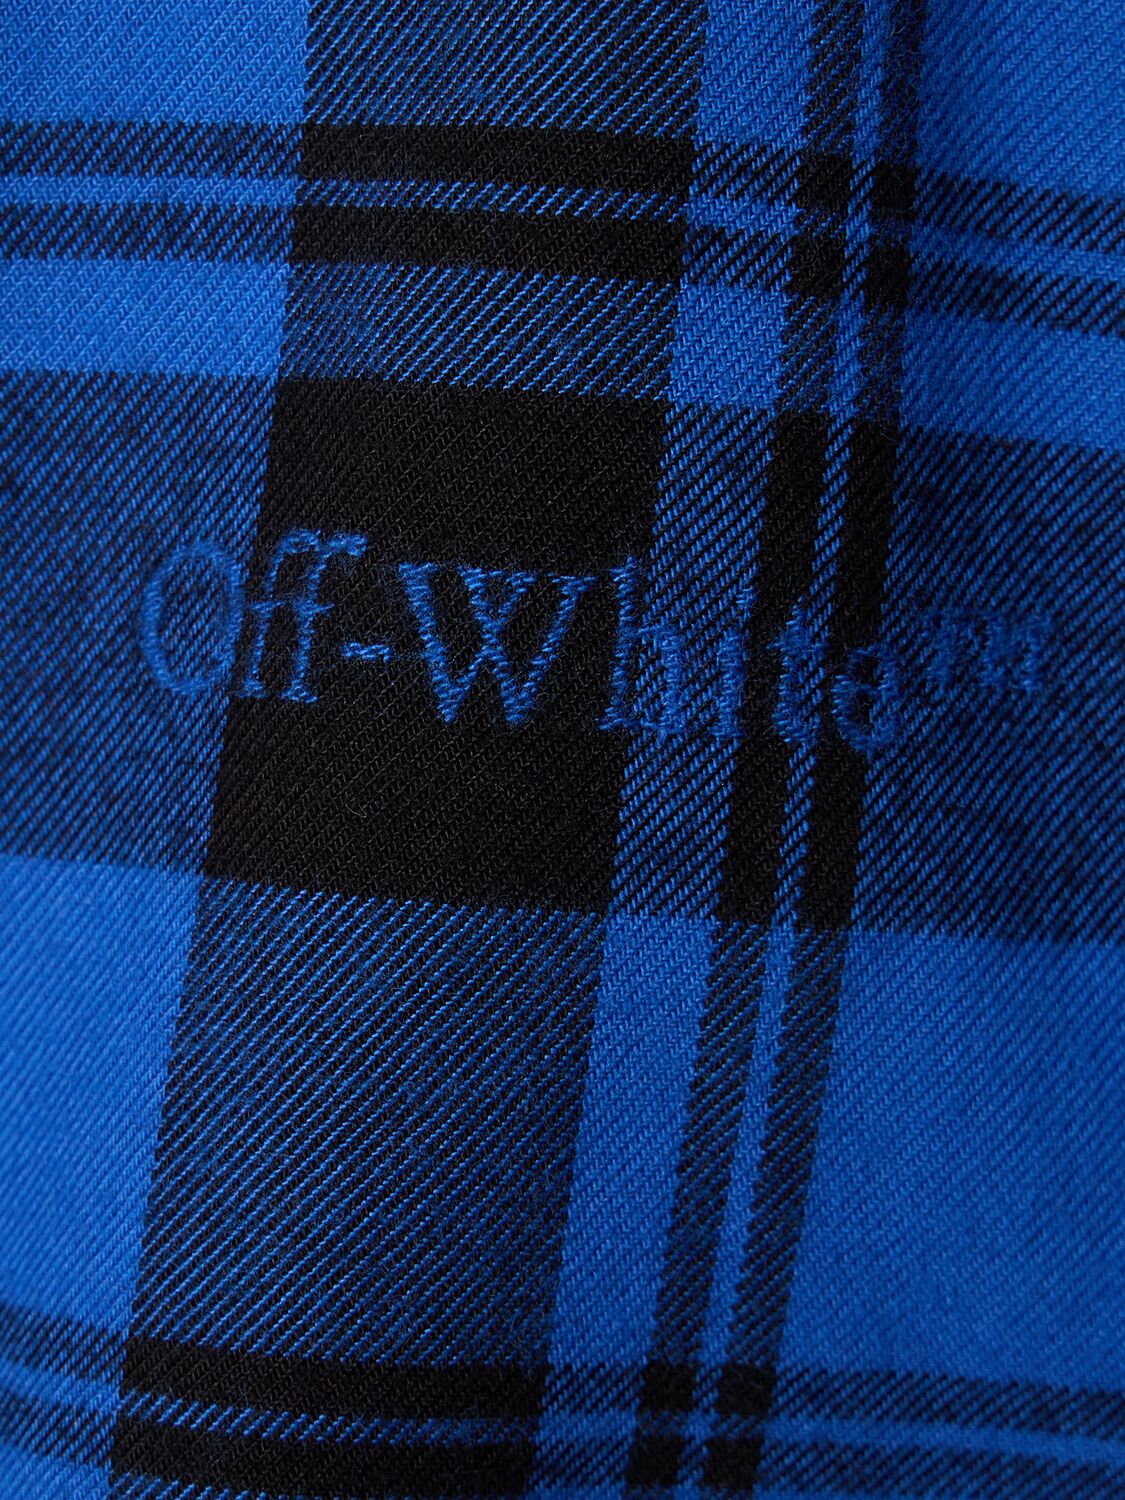 Shop Off-white Check Flannel Cotton Shirt In Dark Blue